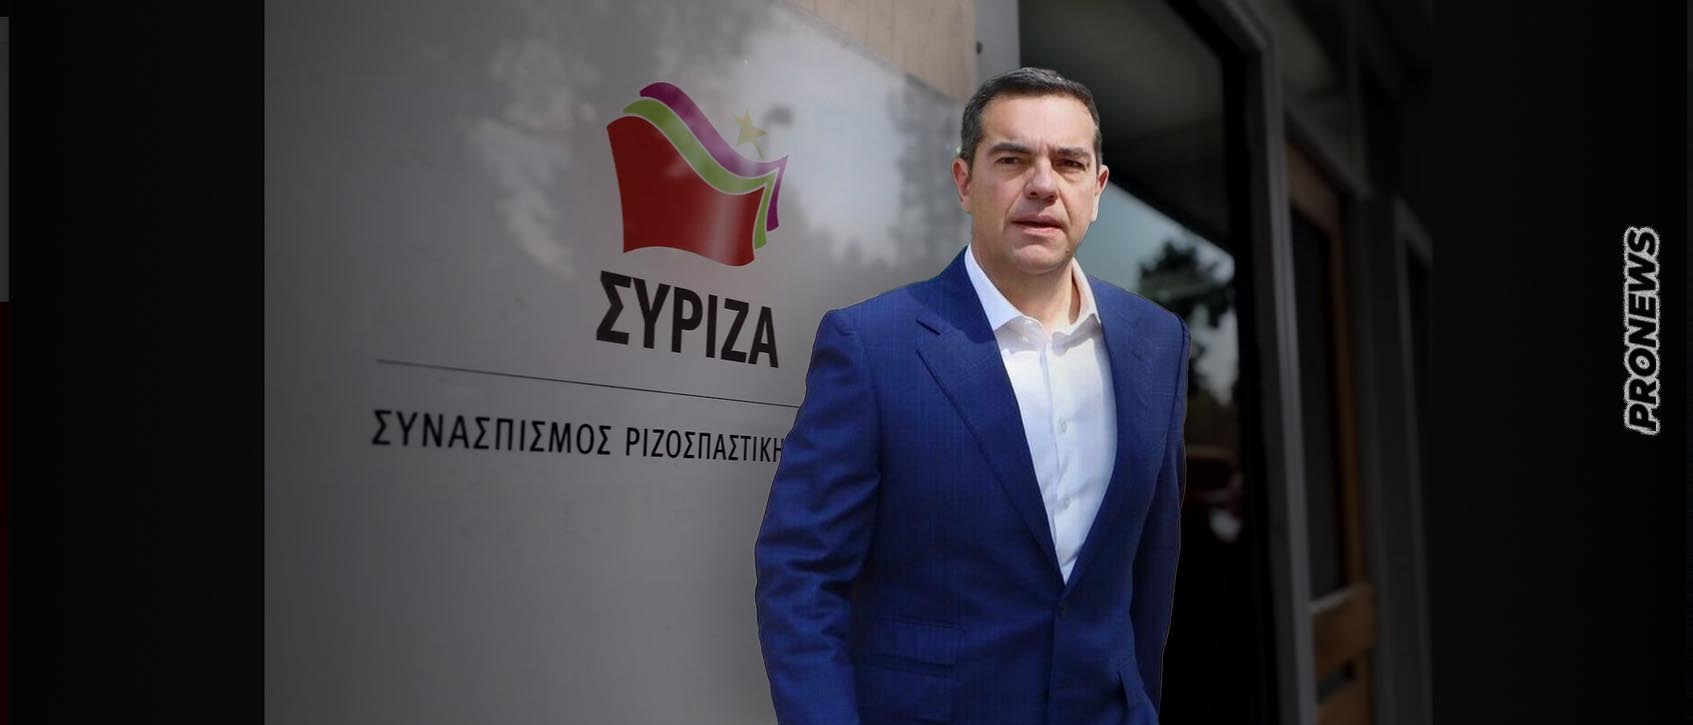 ΣΥΡΙΖΑ: Πήραν «φωτιά» τα social media με την παρέμβαση Α.Τσίπρα και τον «επικήδειο» στον Σ.Κασσελάκη